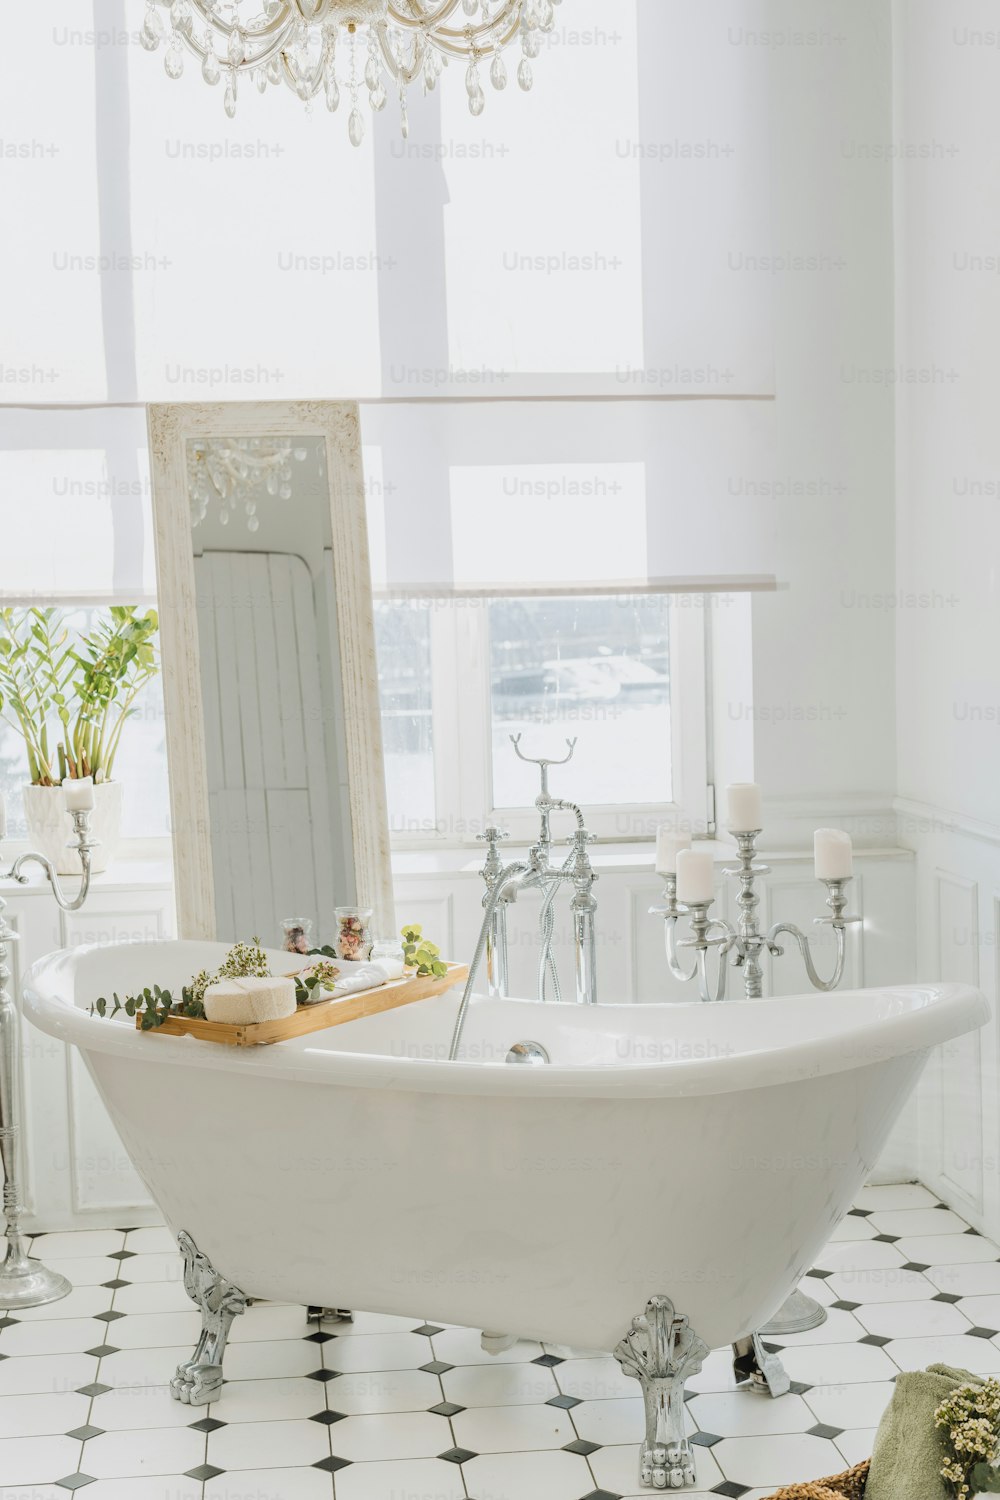 a white bath tub sitting in a bathroom next to a window